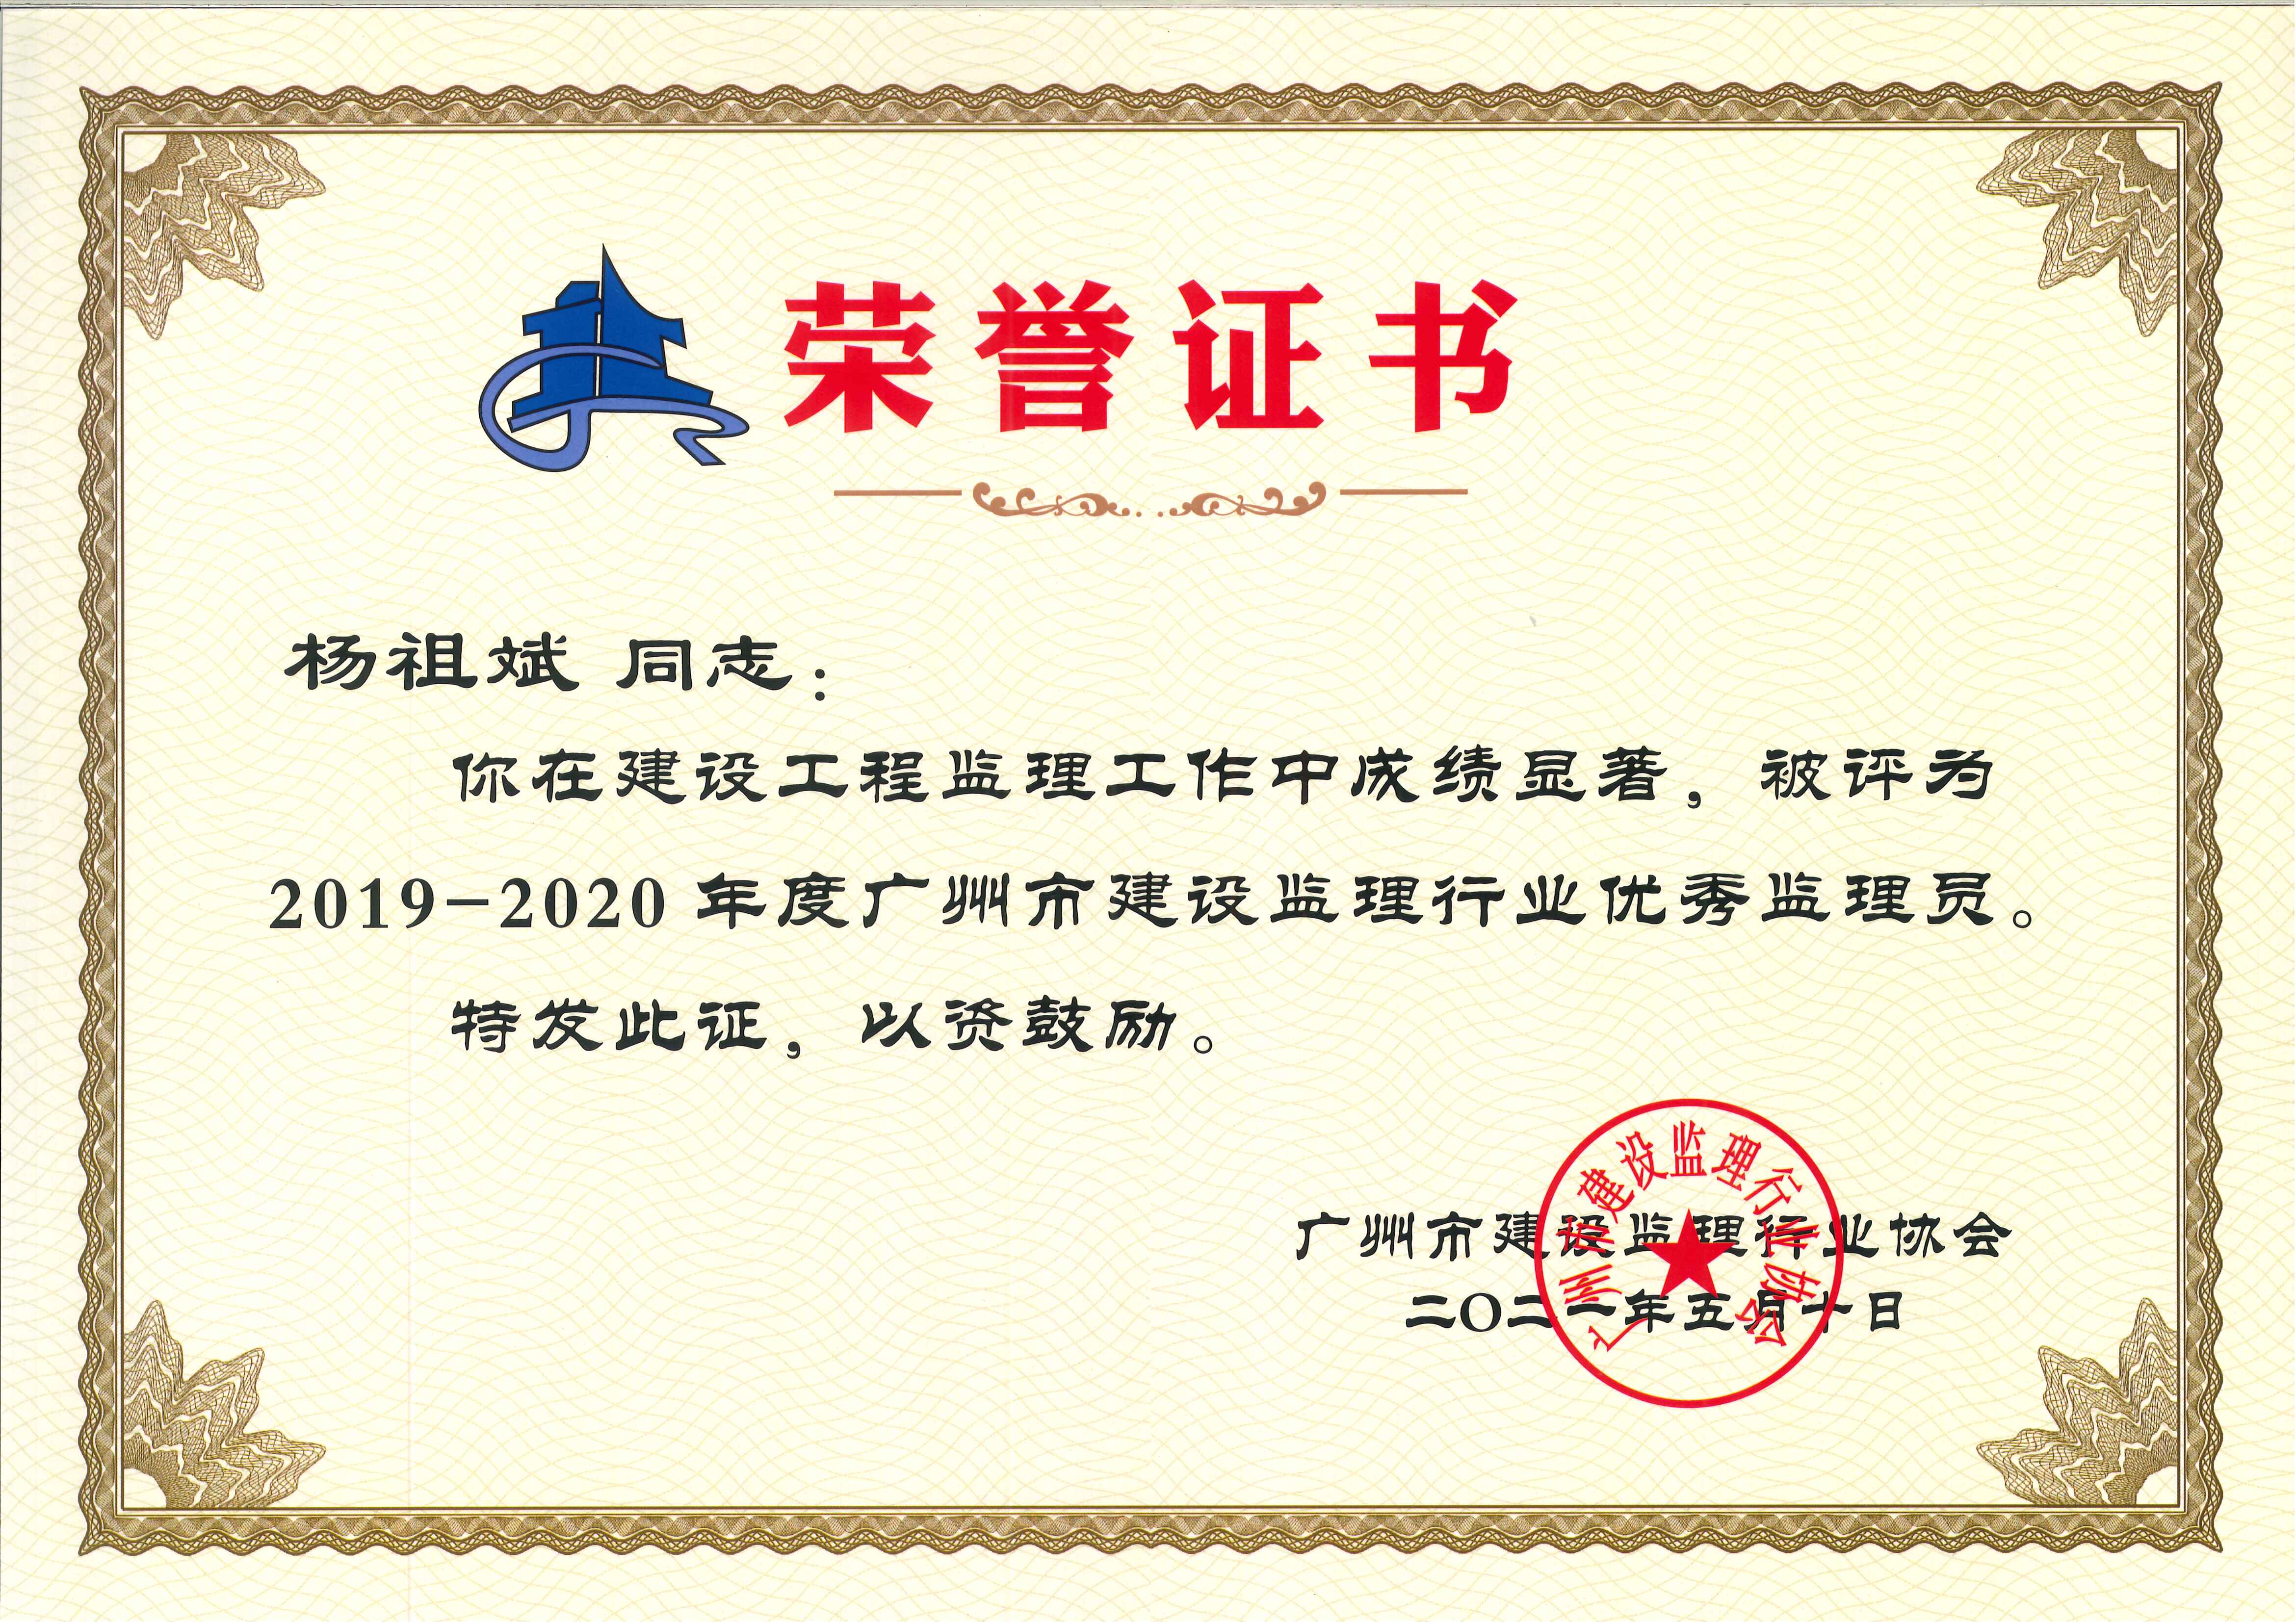 喜訊：熱烈祝賀我司再度榮獲廣州市先進工程監理企業榮譽稱號